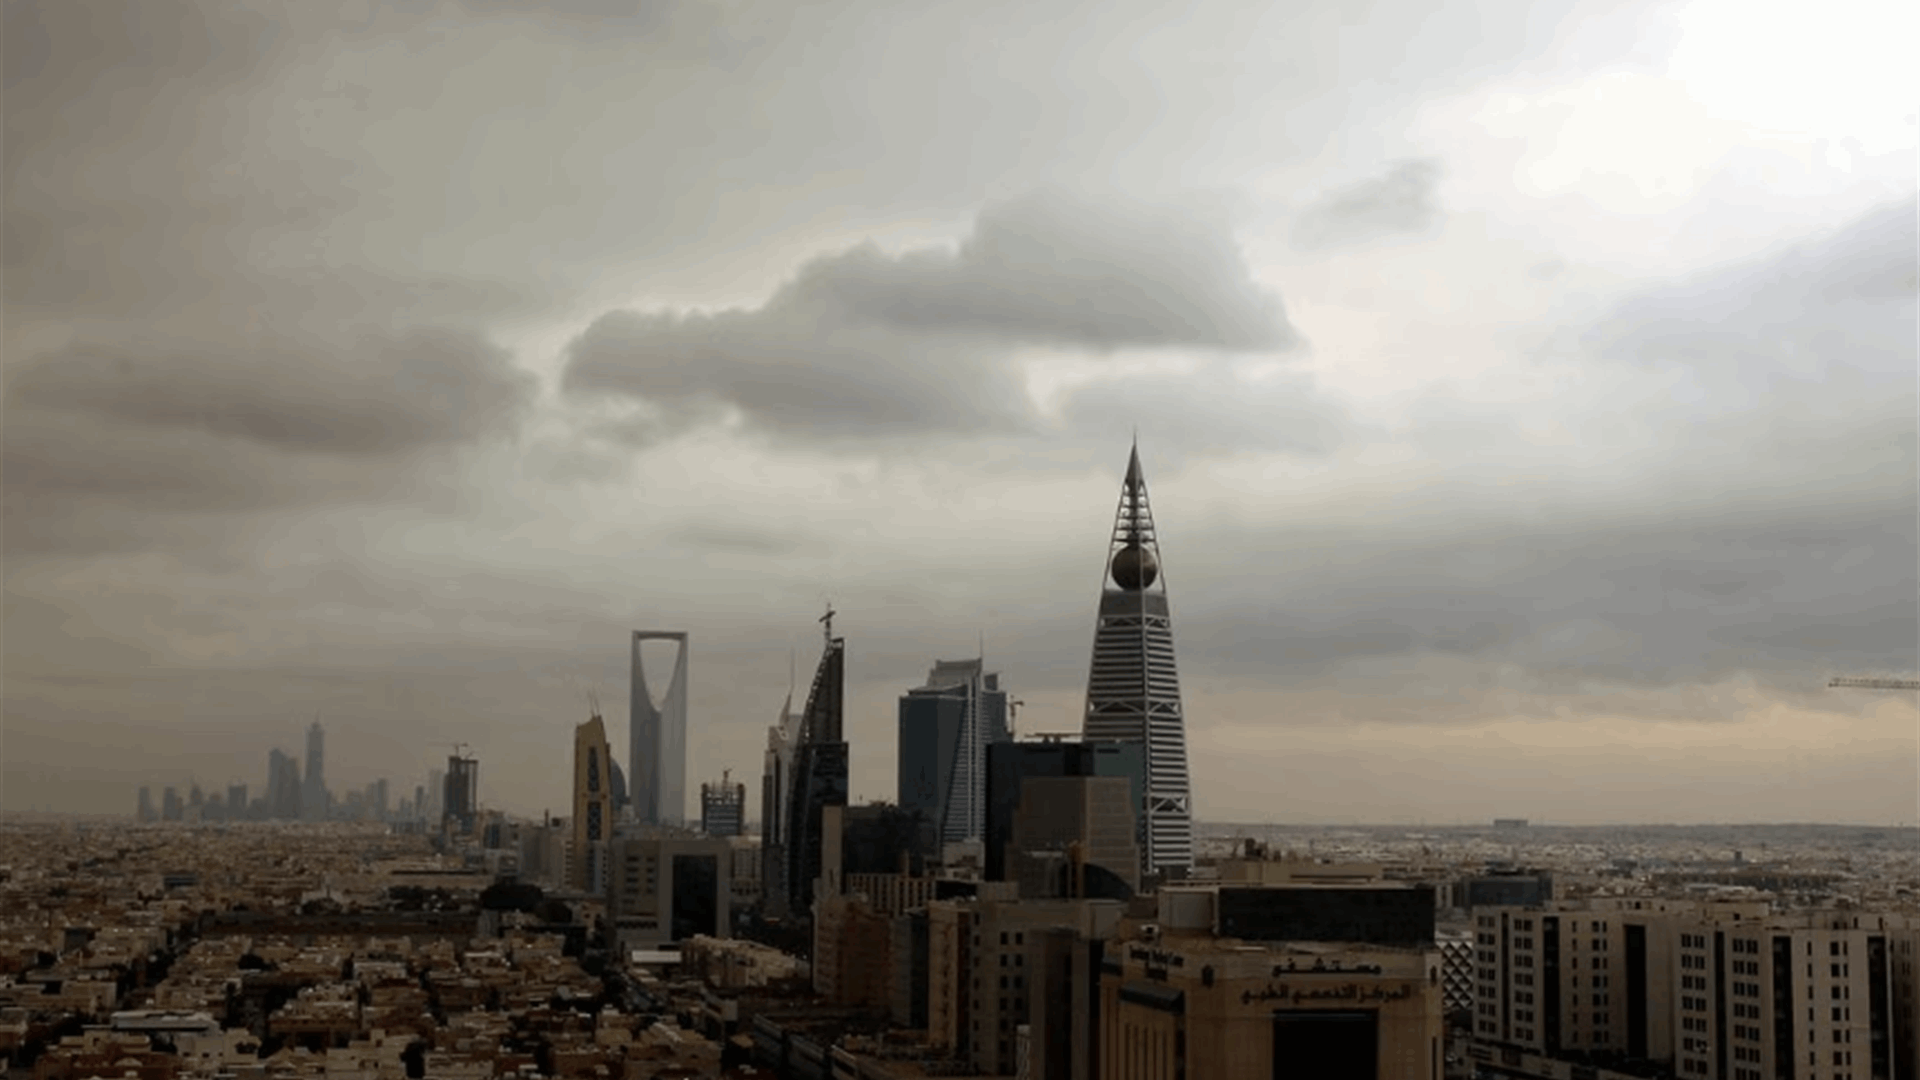 Riyadh city developing fast with eye on Expo 2030 bid